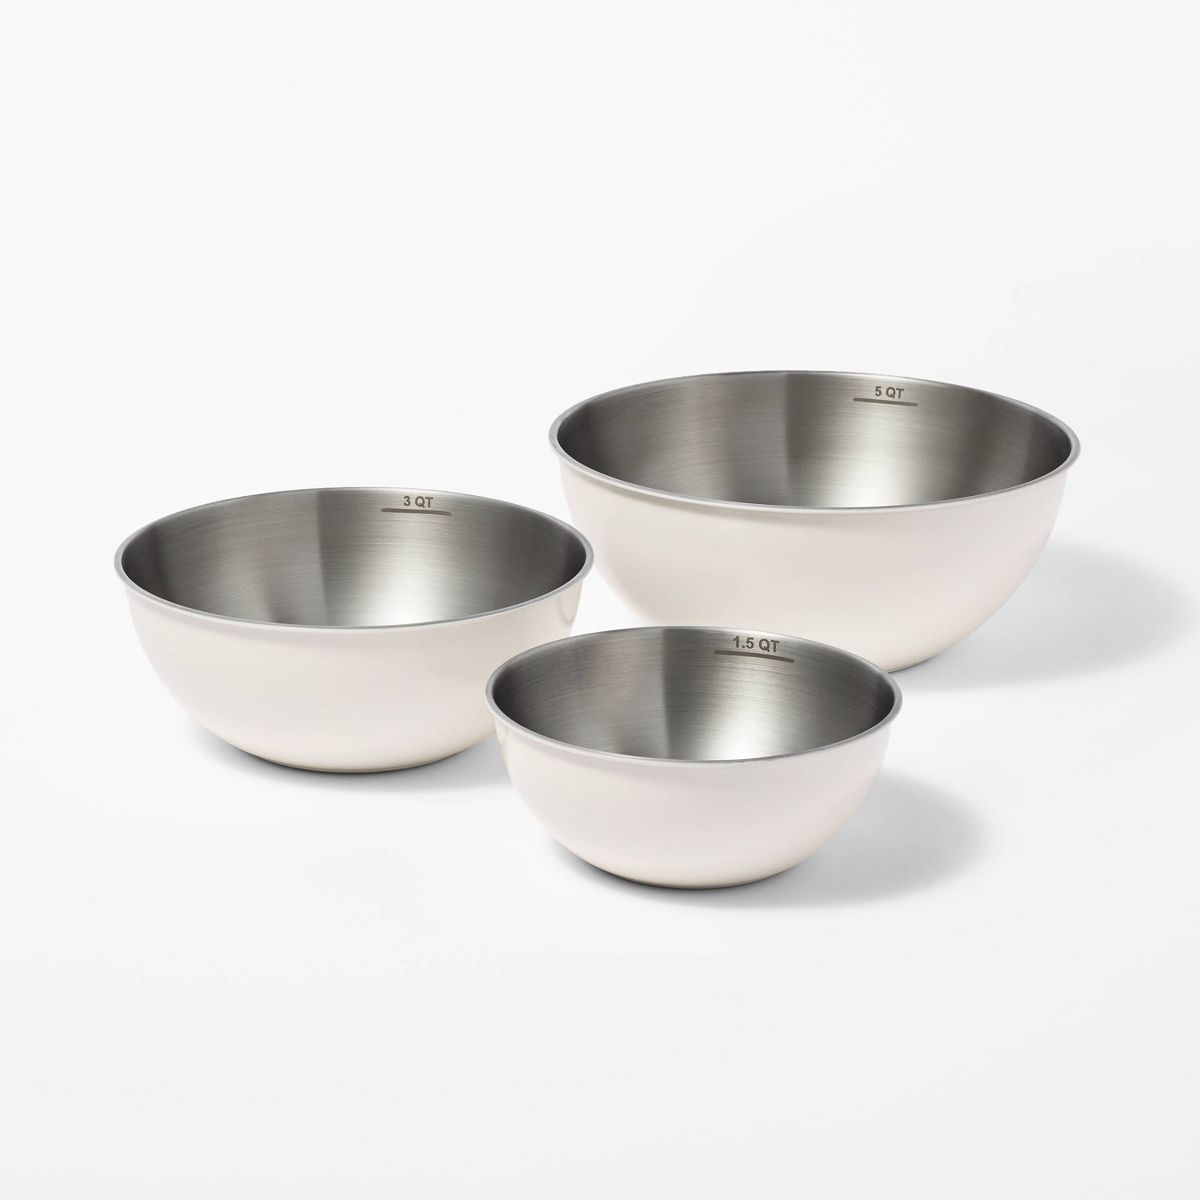 3pc (5qt, 3qt & 1.5qt) Stainless Steel Non-Slip Mixing Bowls (no lids) - Figmint™ | Target